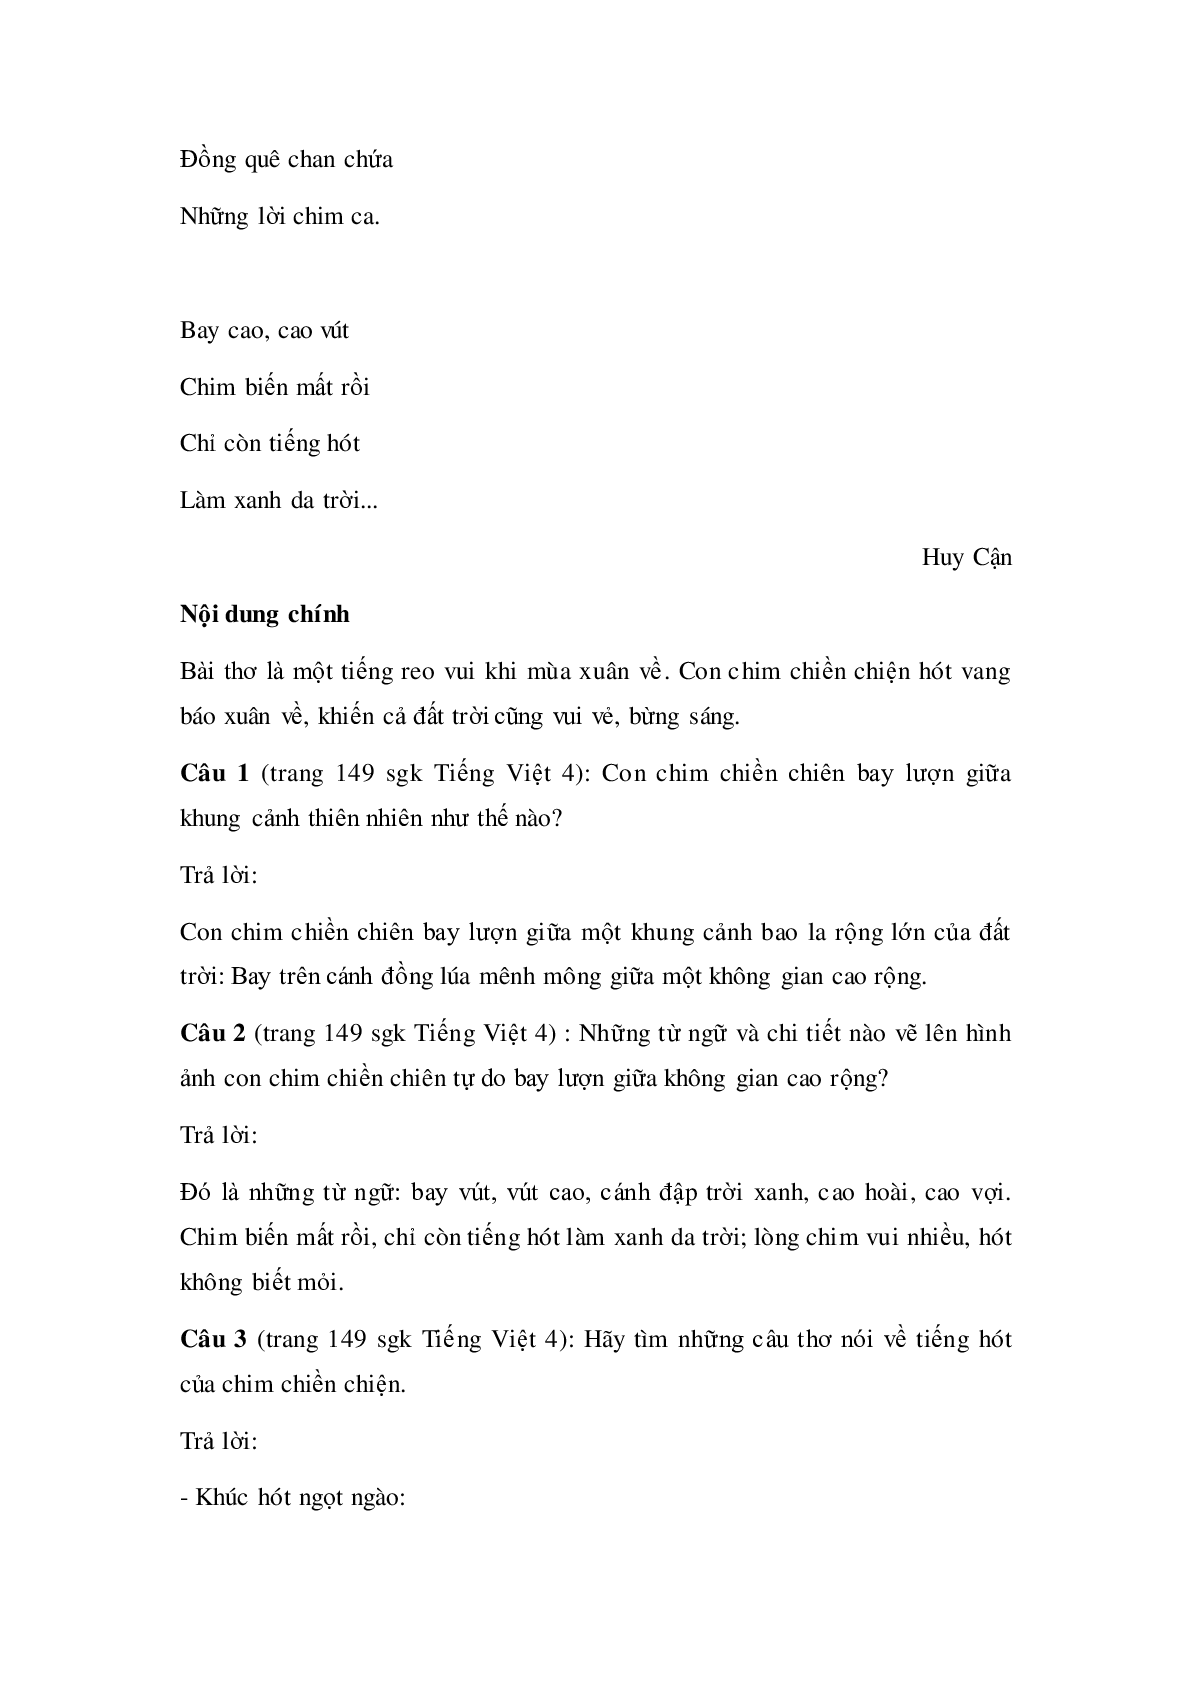 Soạn Tiếng Việt lớp 4: Tập đọc: Con chim chiền chiện mới nhất (trang 2)